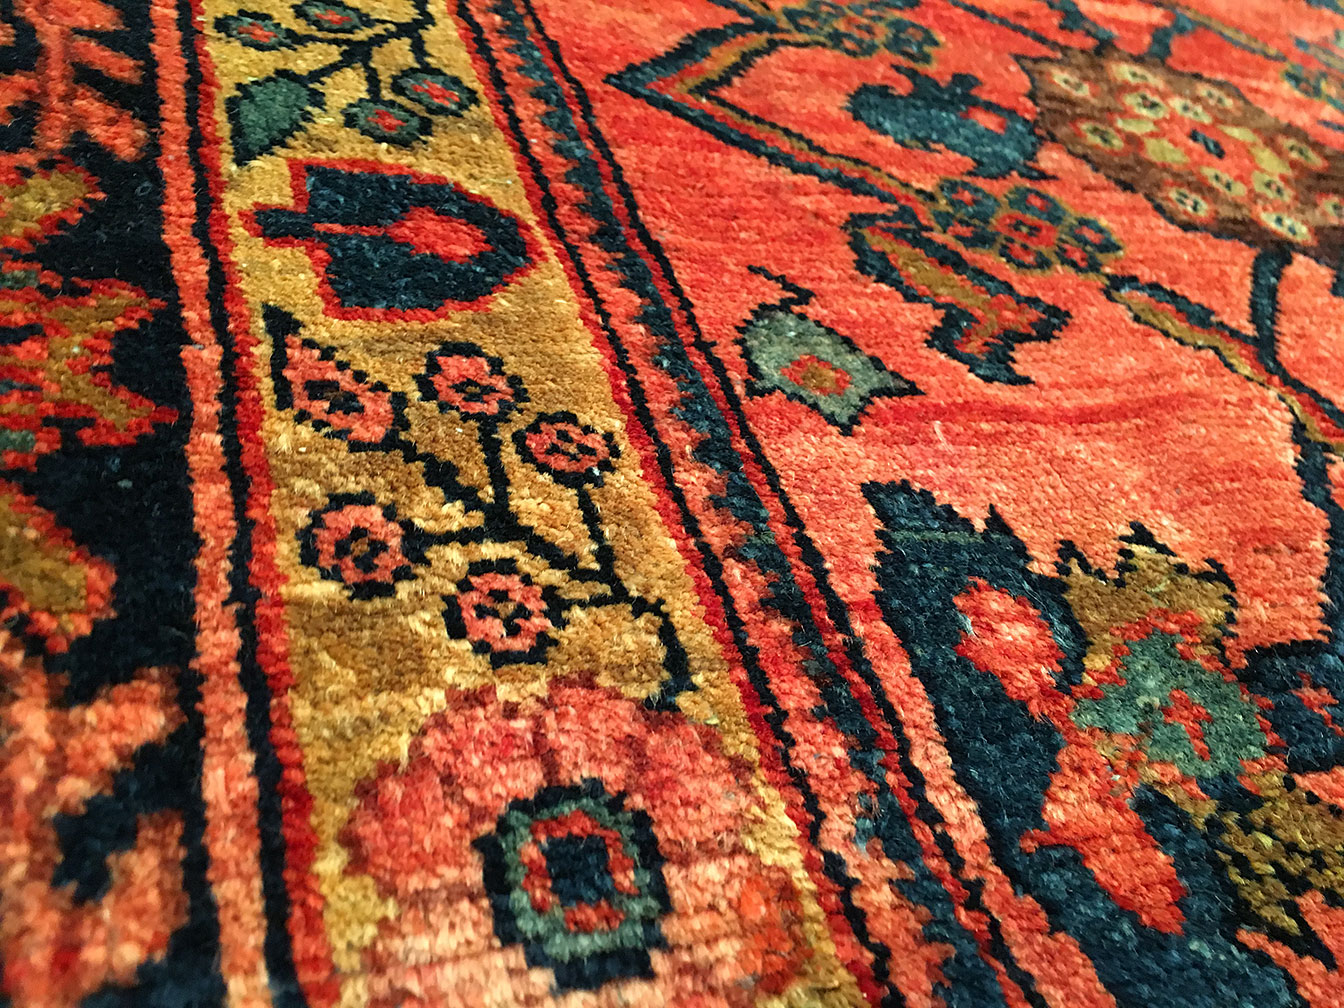 Antique lilian Carpet - # 51205